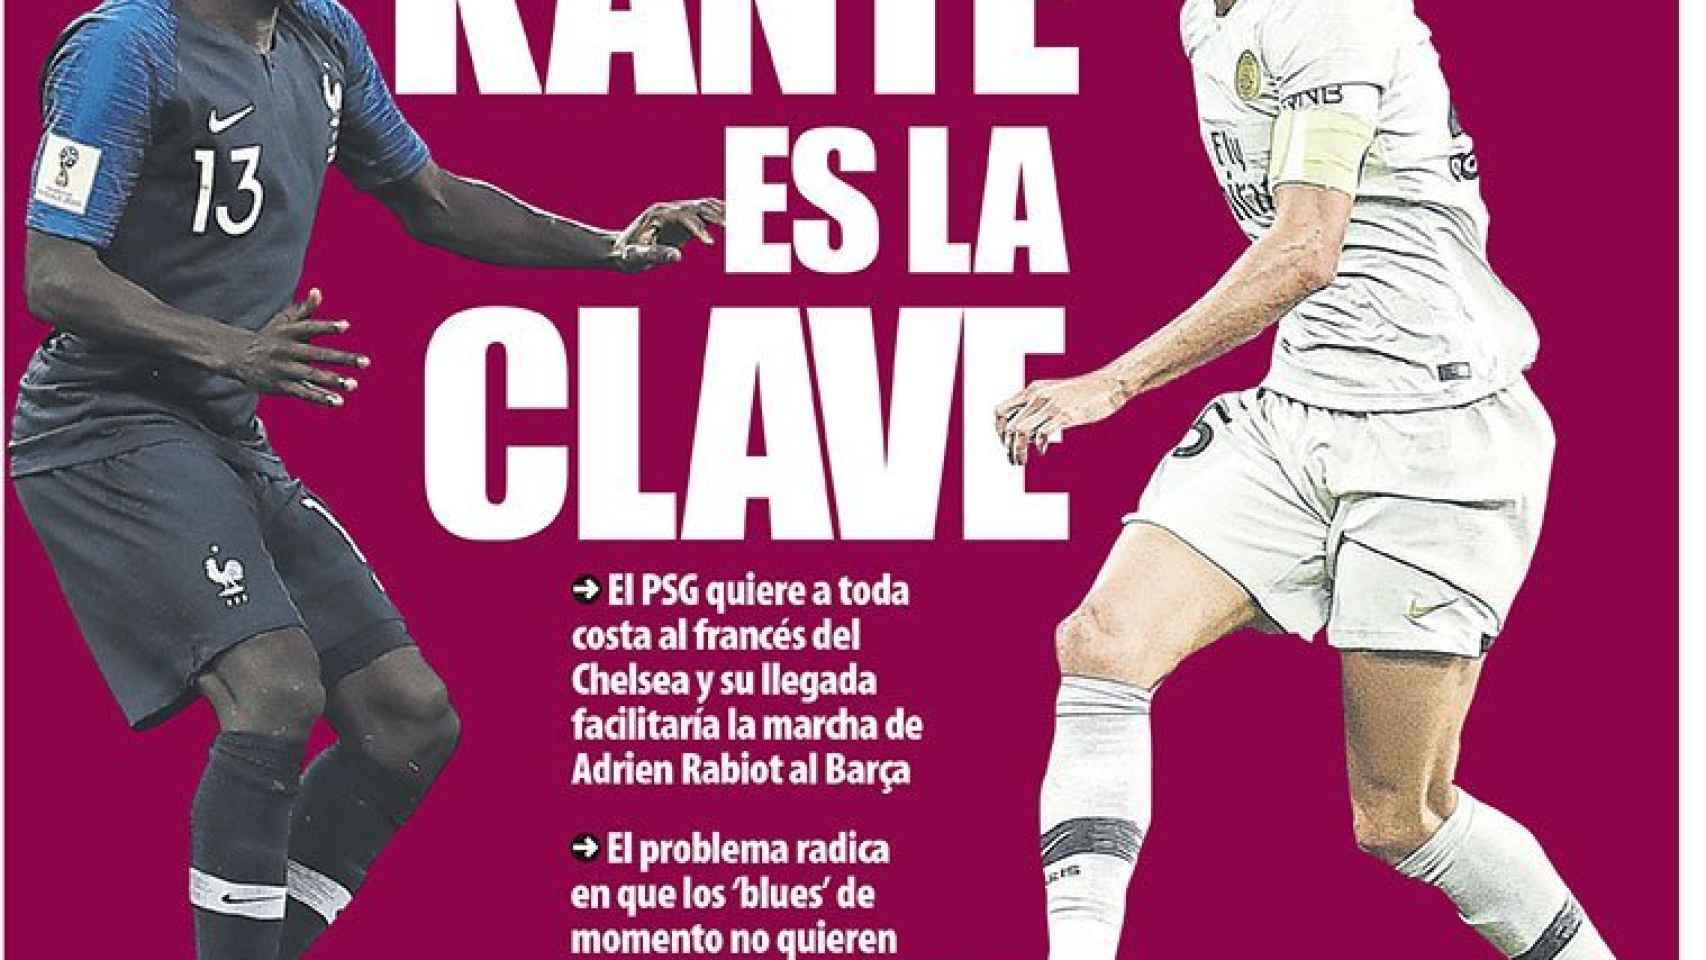 La portada del diario Mundo Deportivo (01/08/2018)